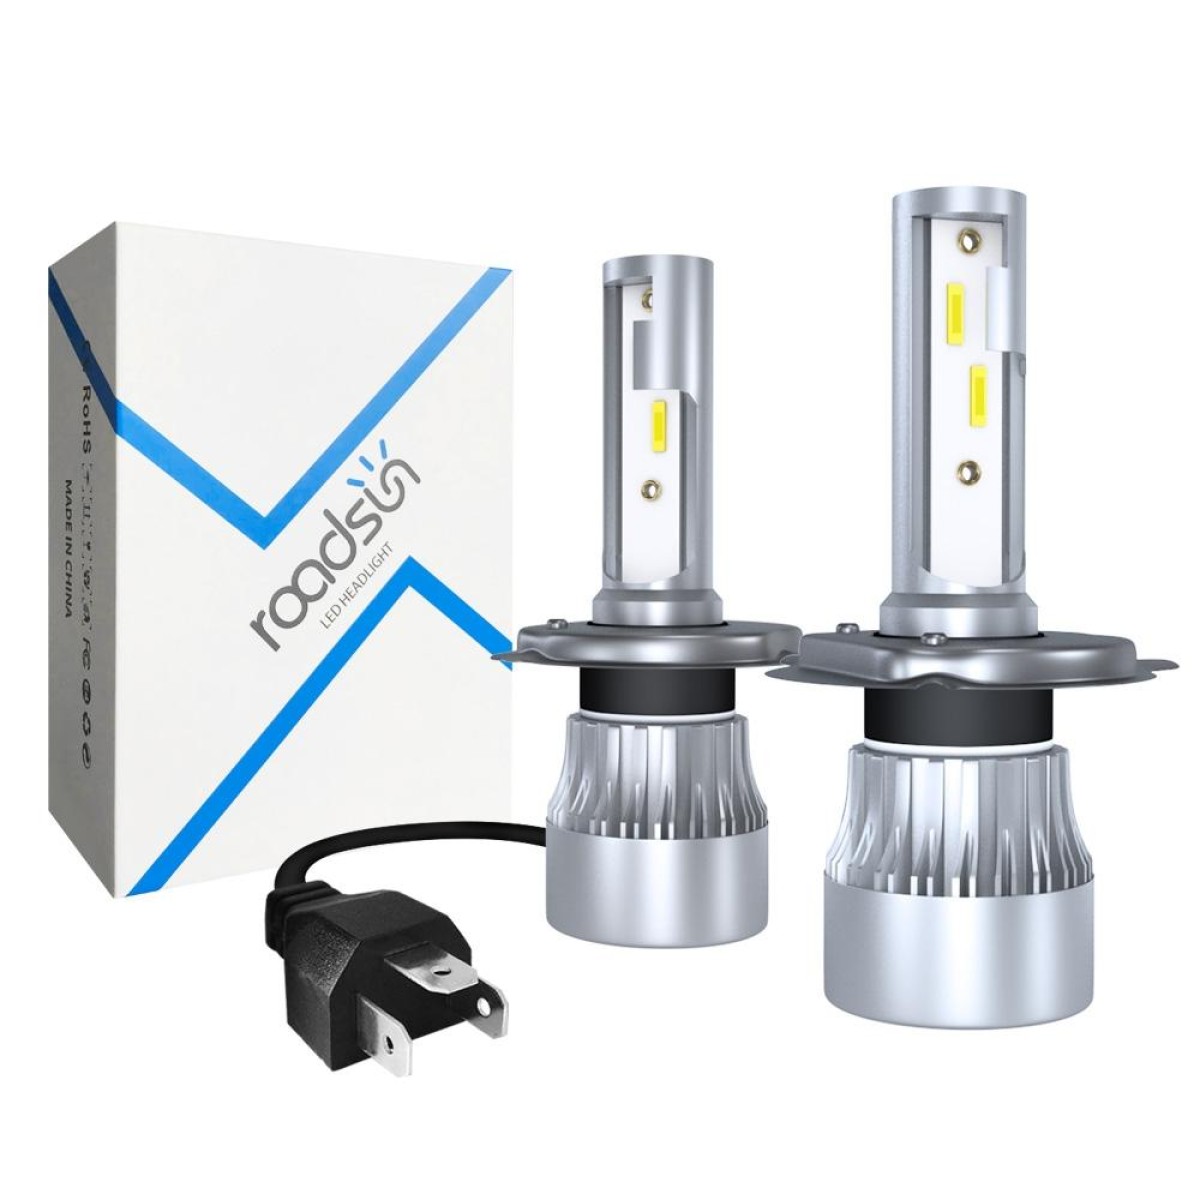 2 PCS 1902 H4 / HB2 / 9003 DC9-36V / 23W / 6000K / 2300LM IP68 Car LED Headlight Lamps (White Light)